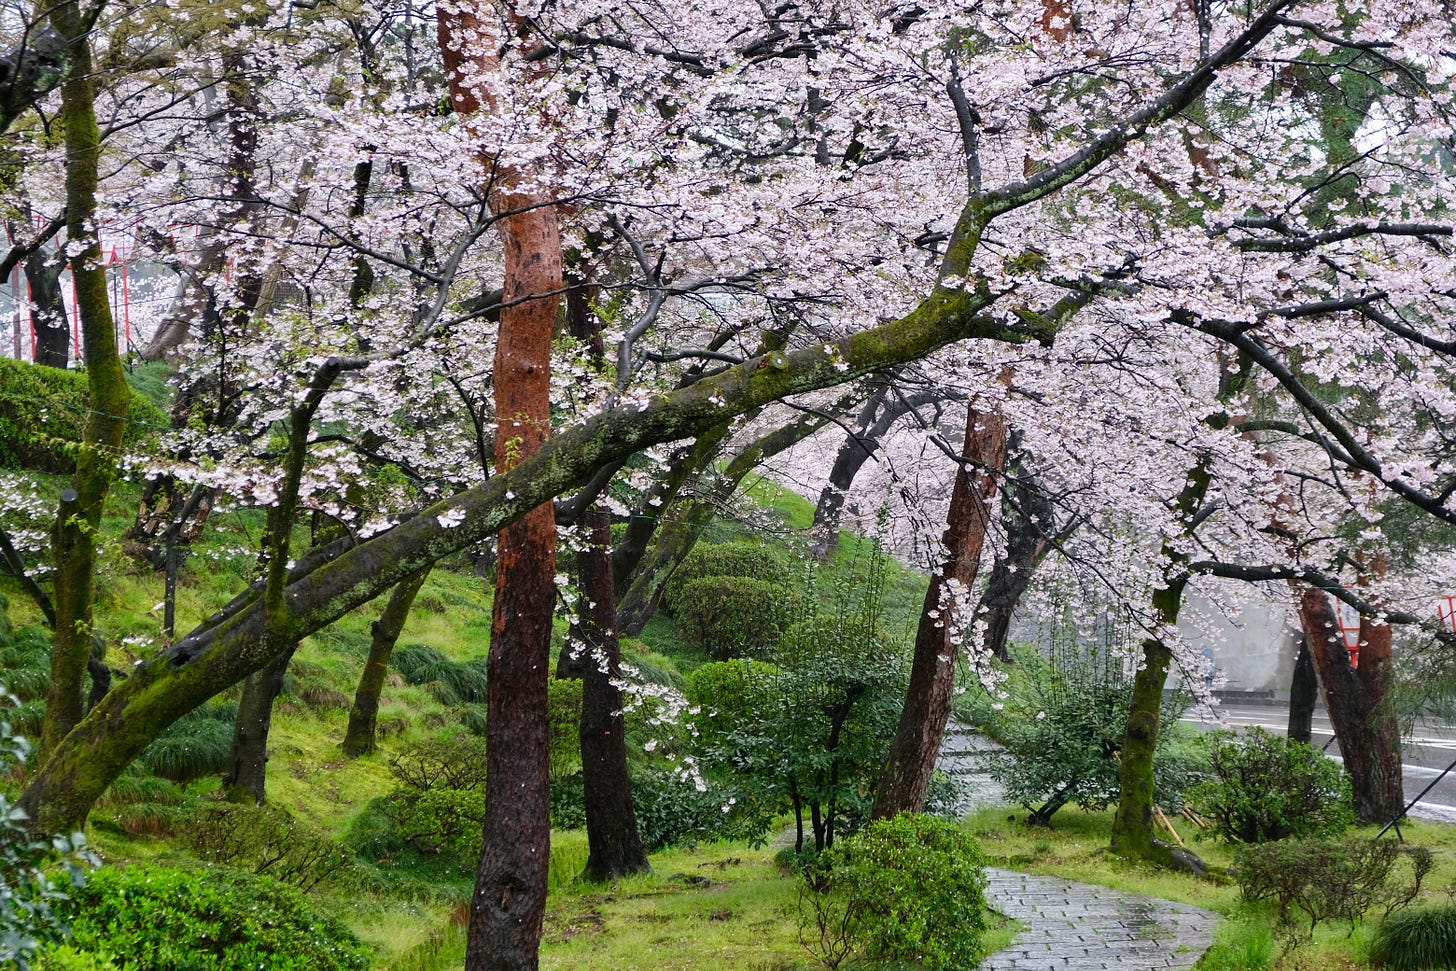 Photo of Japan by Ben Dark.Cherry trees in Japan. Photo by Ben Dark